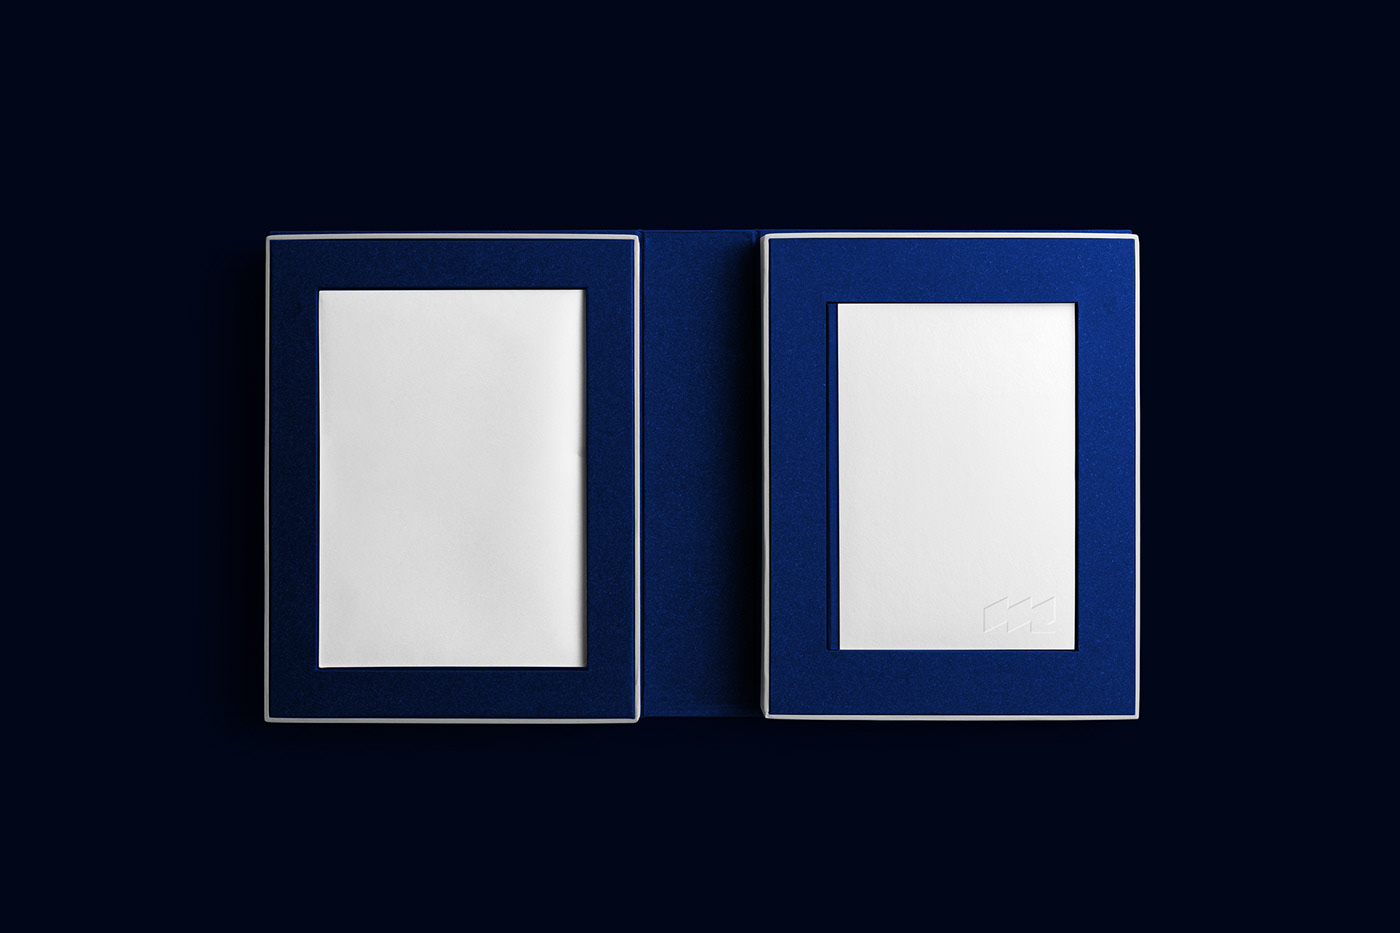 Dois livros com capas azuis e espaços em branco centrais sobre fundo escuro, logotipo discreto.